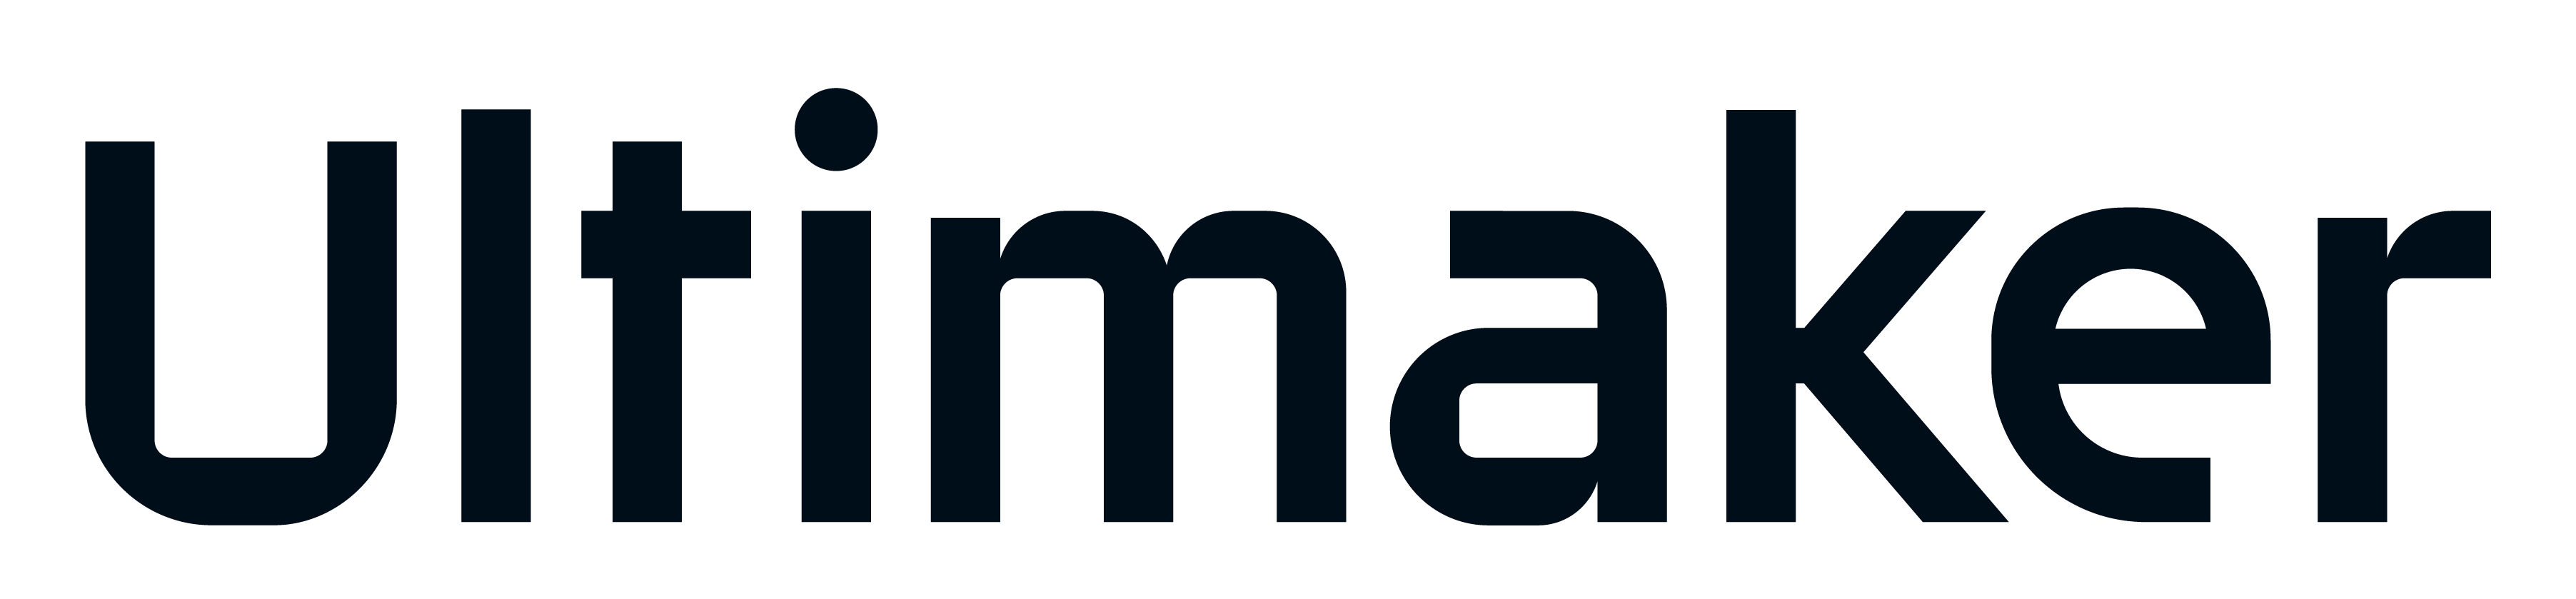 Ultimaker logo